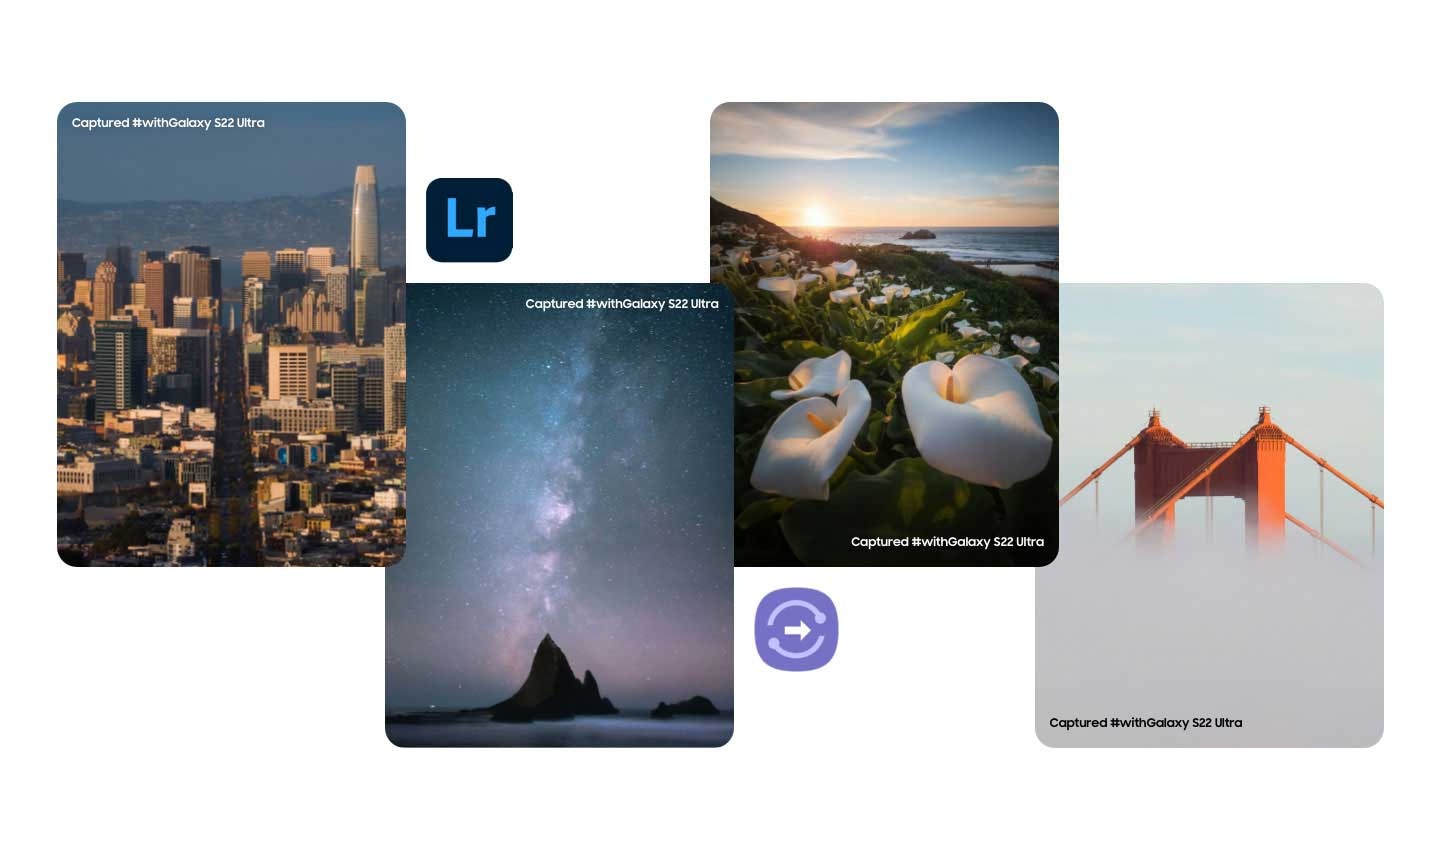 Un collage de paisajes rodeados de iconos de las aplicaciones Adobe Lightroom y Samsung Quick Share. Capturado #withGalaxy S22 Ultra